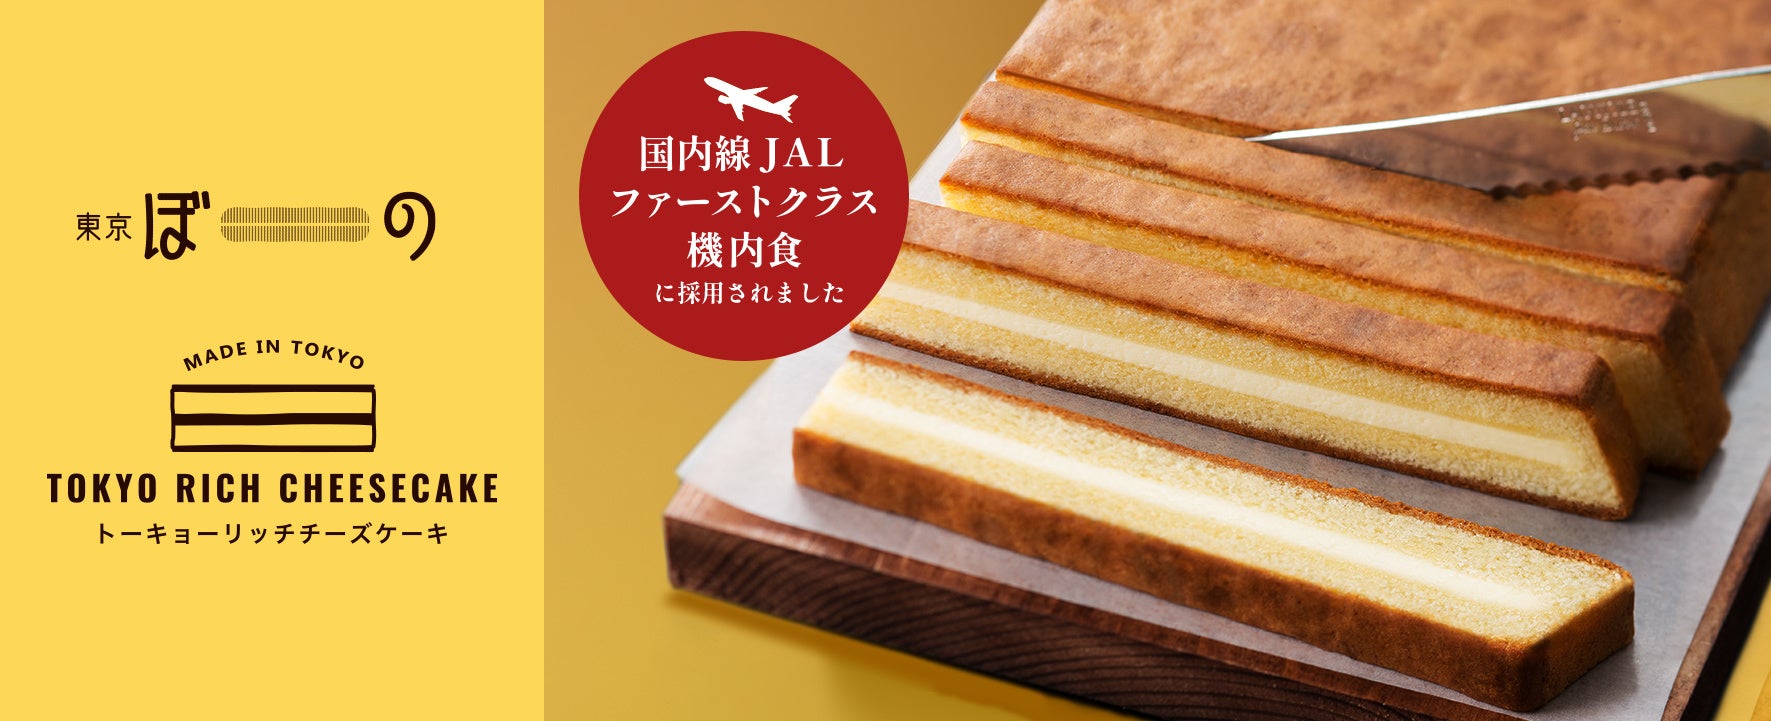 【3年連続！】チーズスイーツブランド『東京ぼーの』が国内線JALファーストクラス機内食に採用されました!